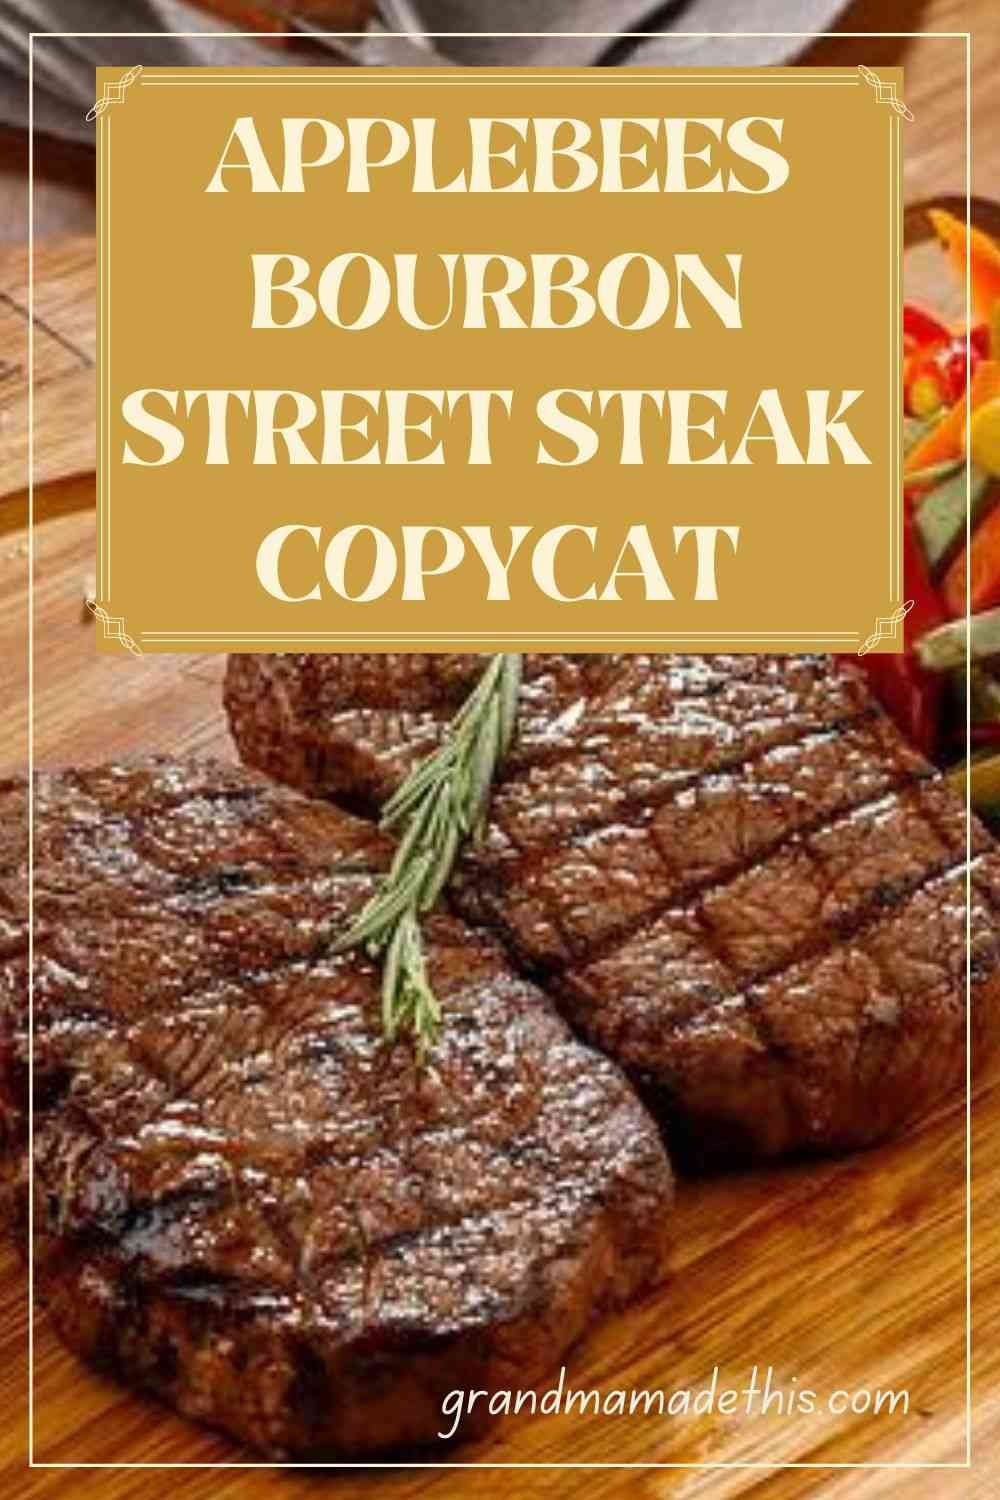 Applebee's Bourbon Street Steak Copycat